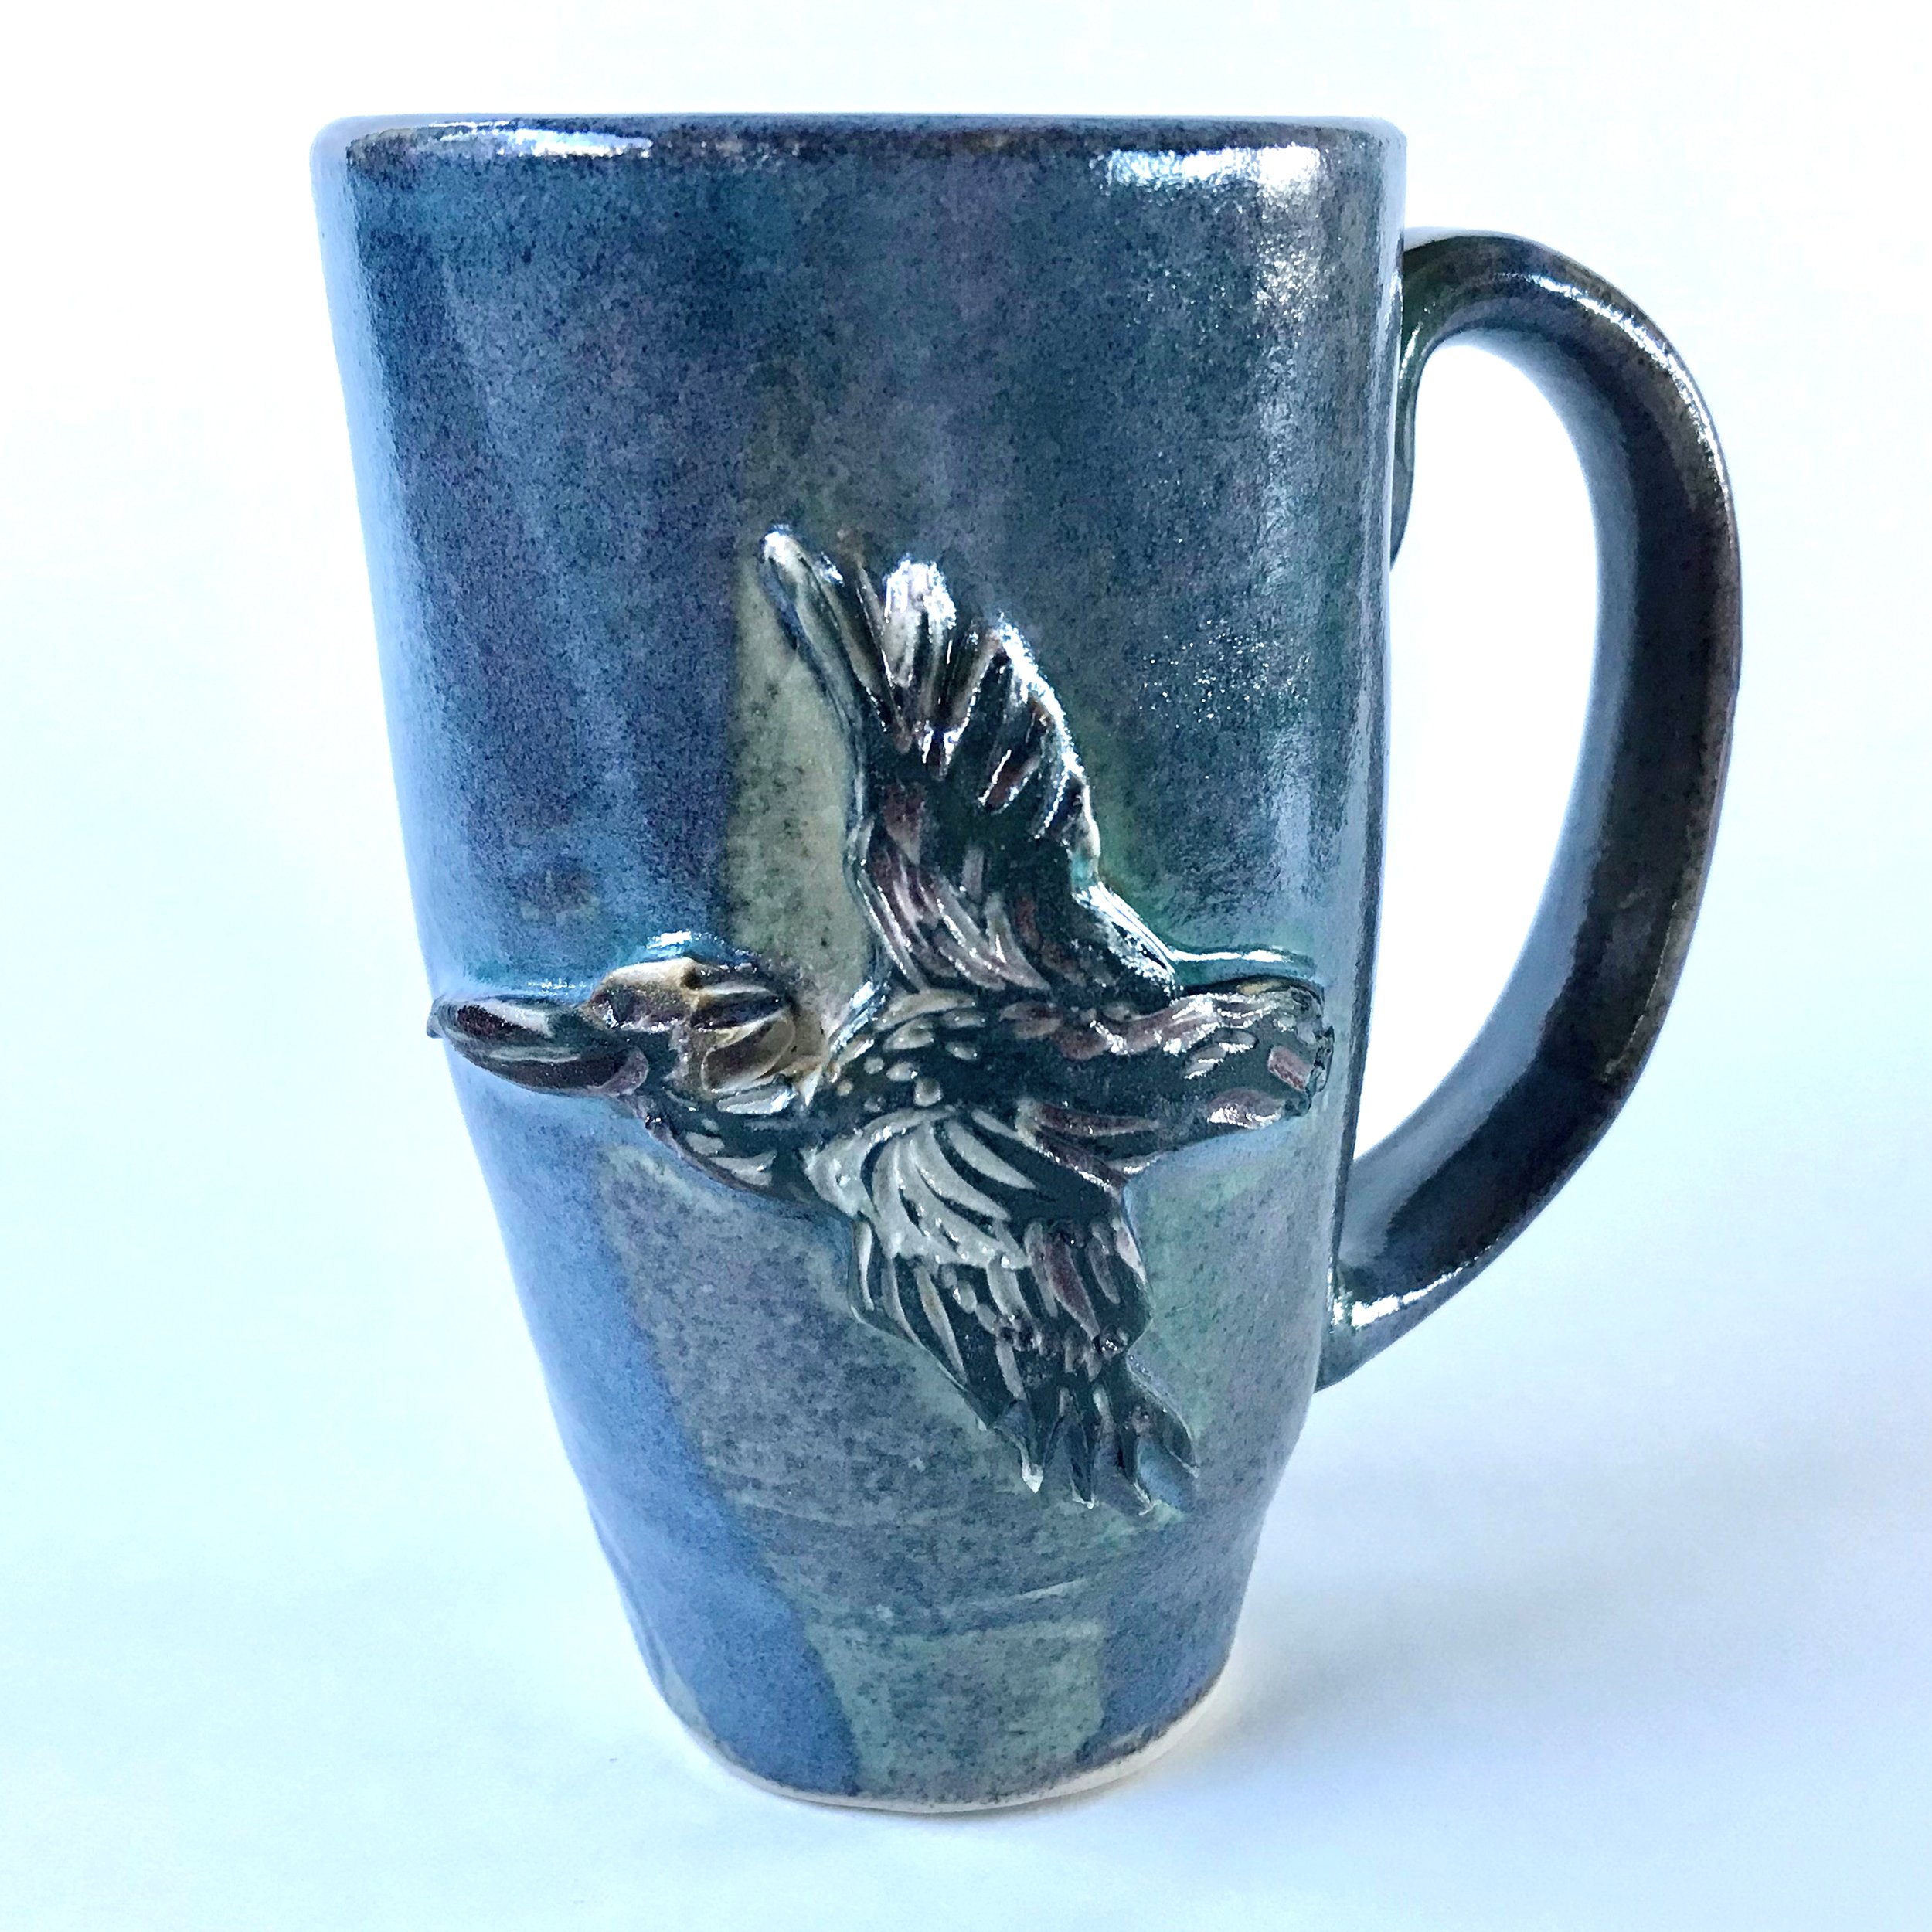 Pelican Mug